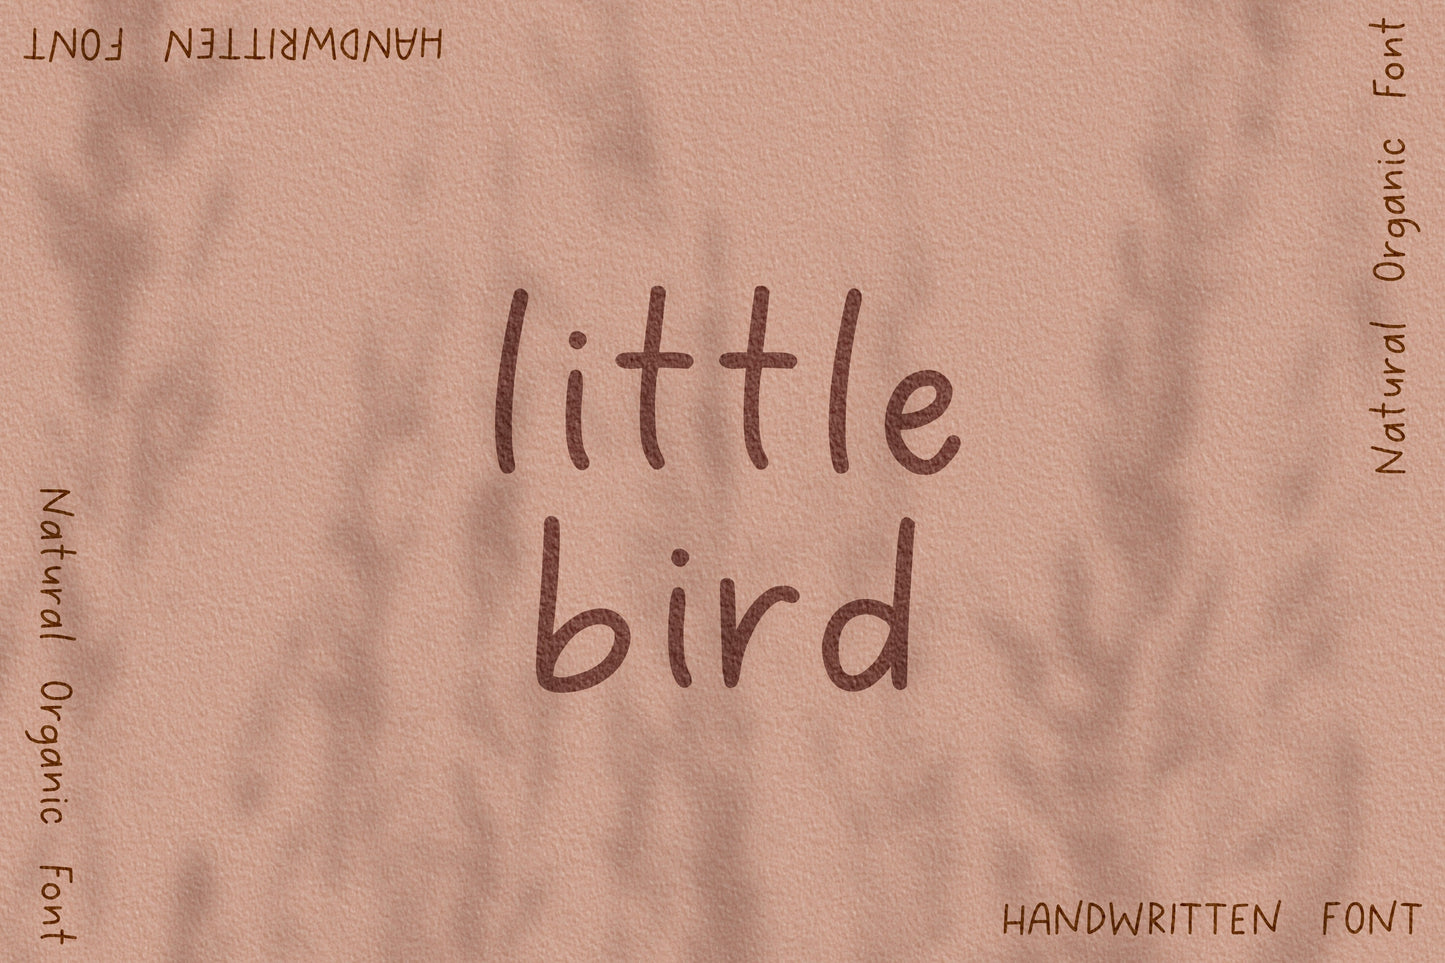 Little Bird Handwritten Font